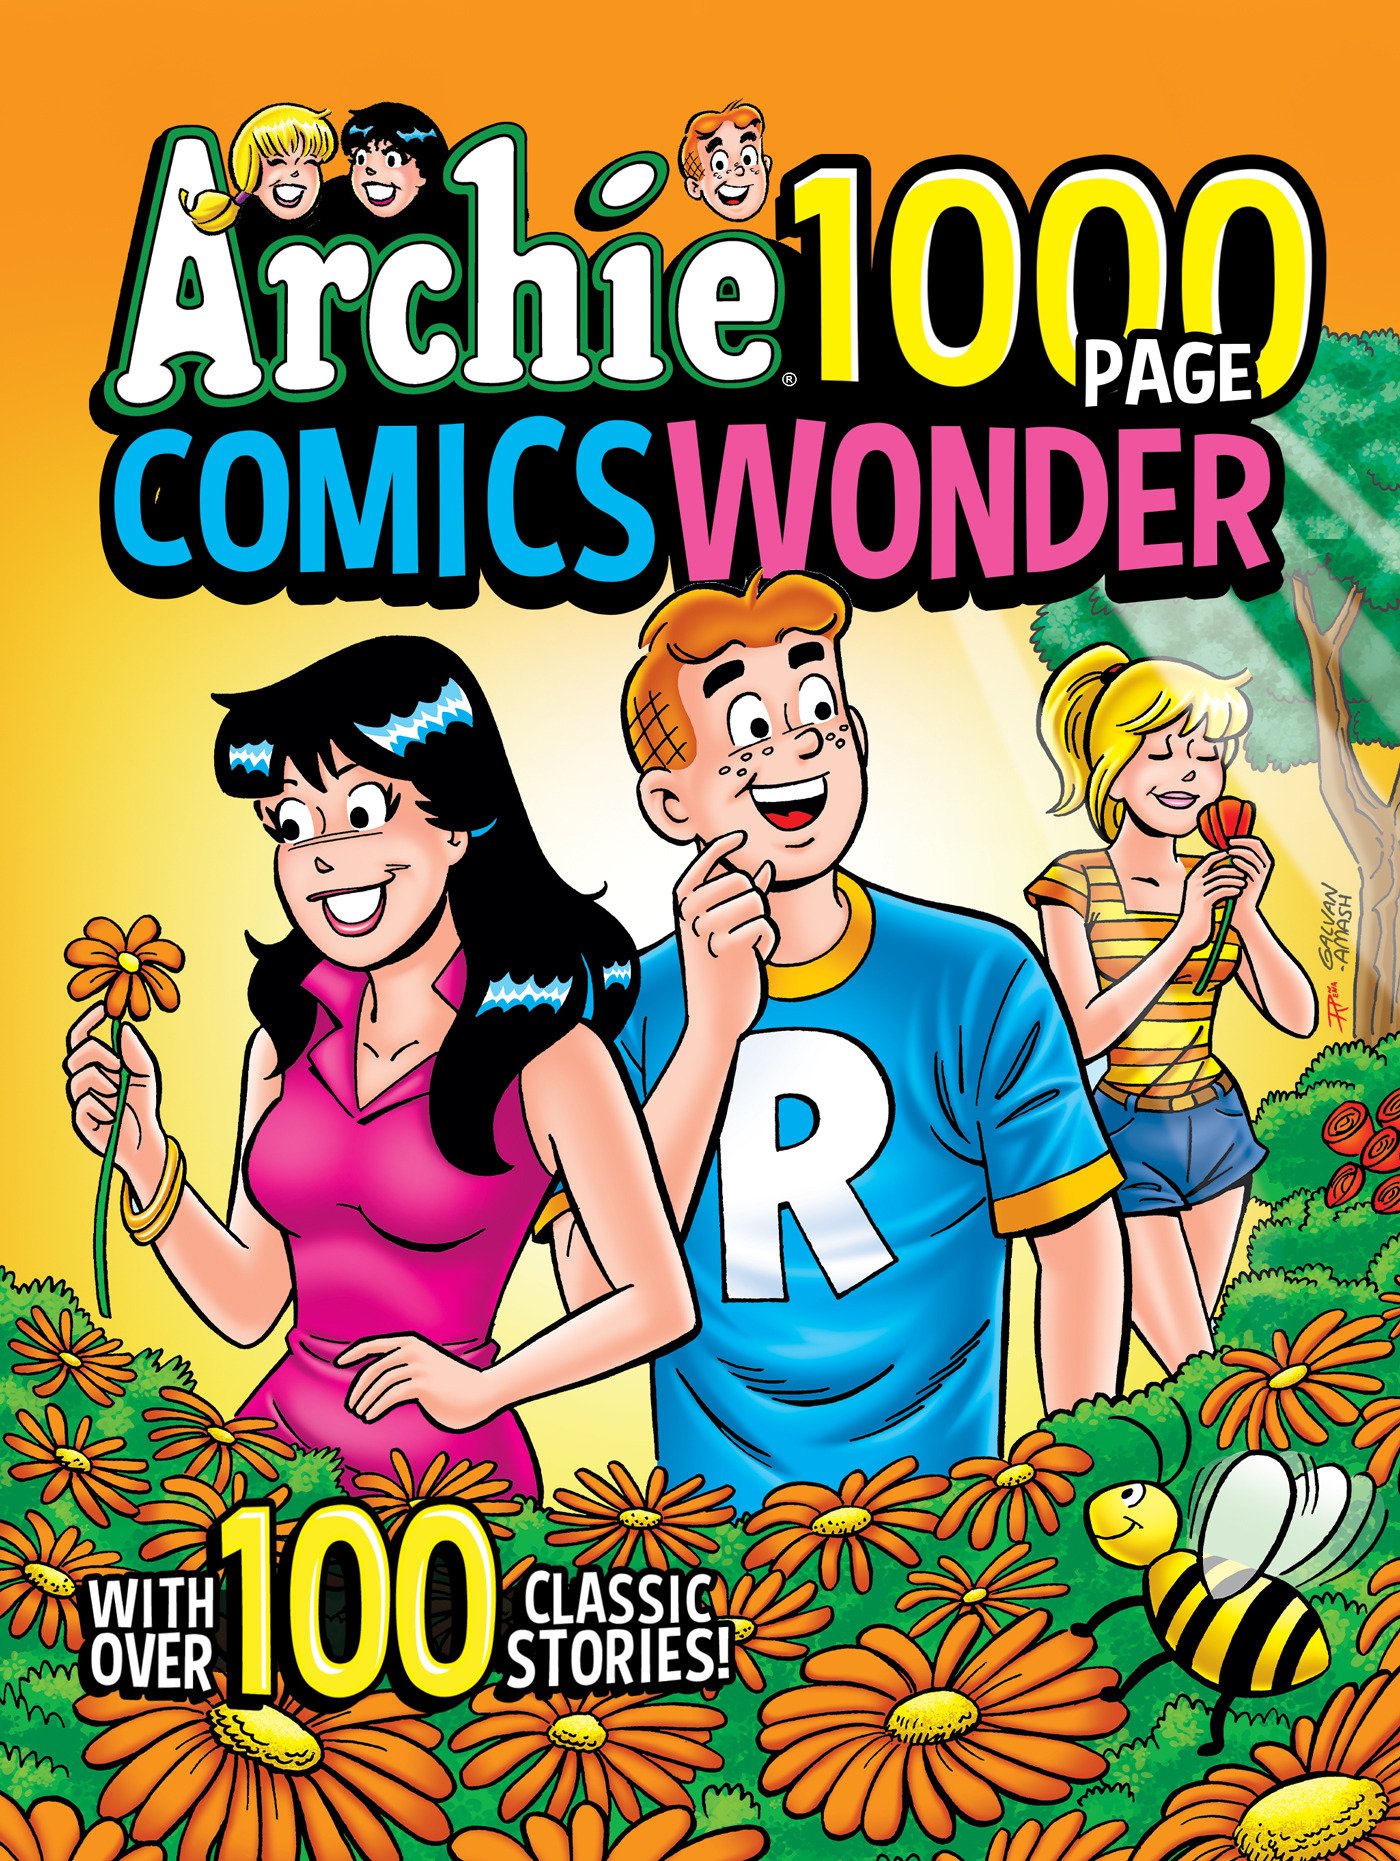 Archie 1000 Page Comics Wonder Graphic Novel